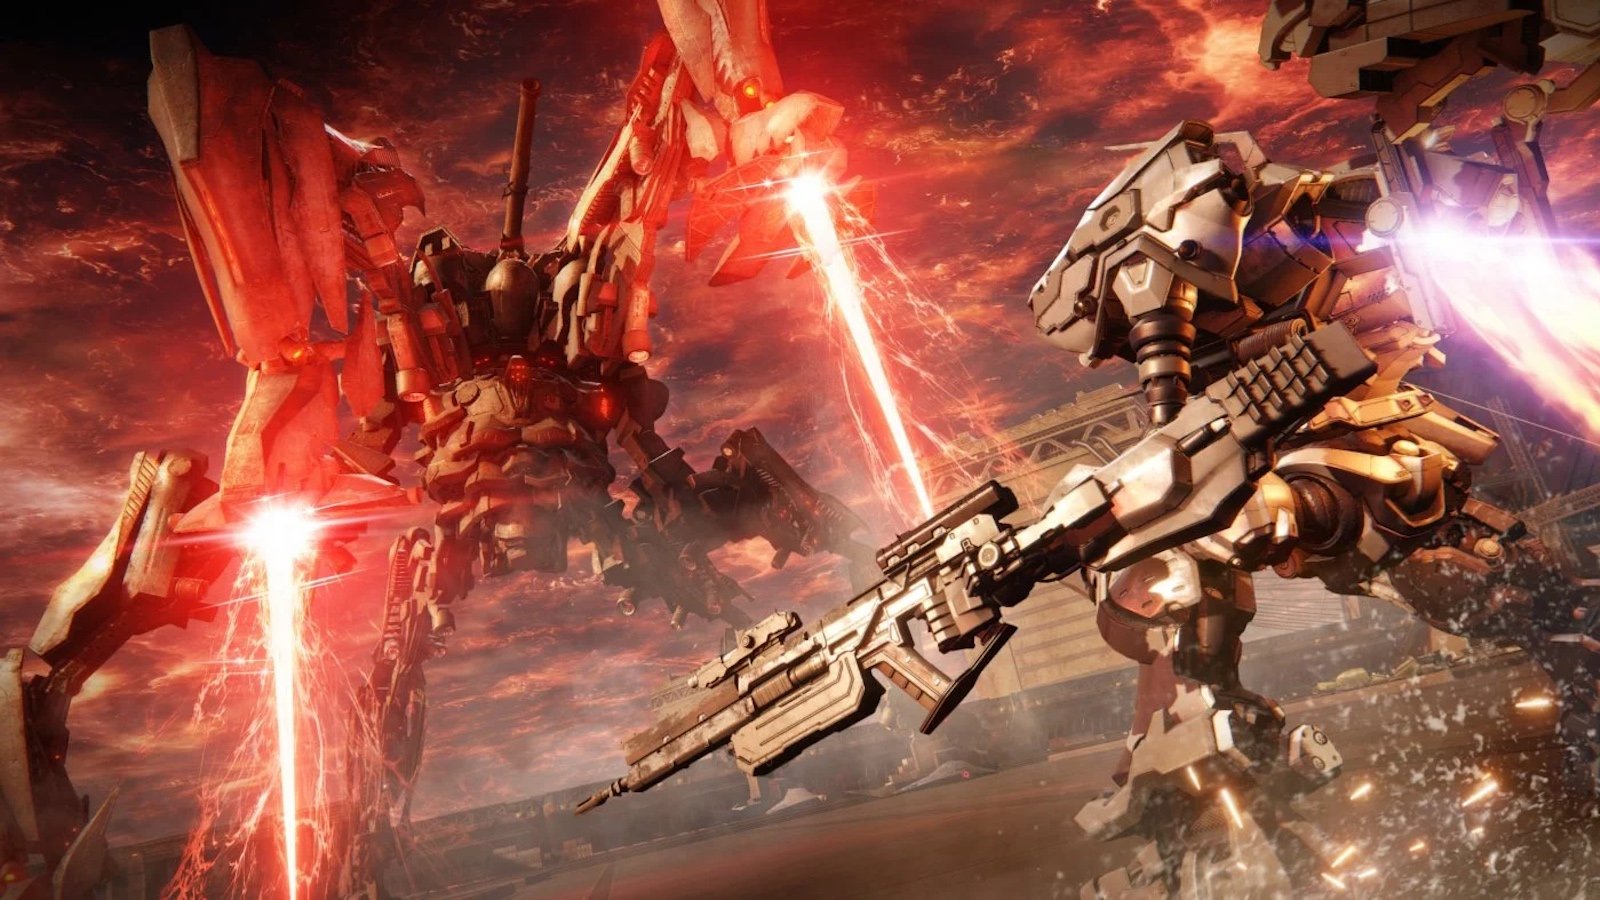 Armored Core 6 - Fires of Rubicon, la recensione del possente videogioco FromSoftware